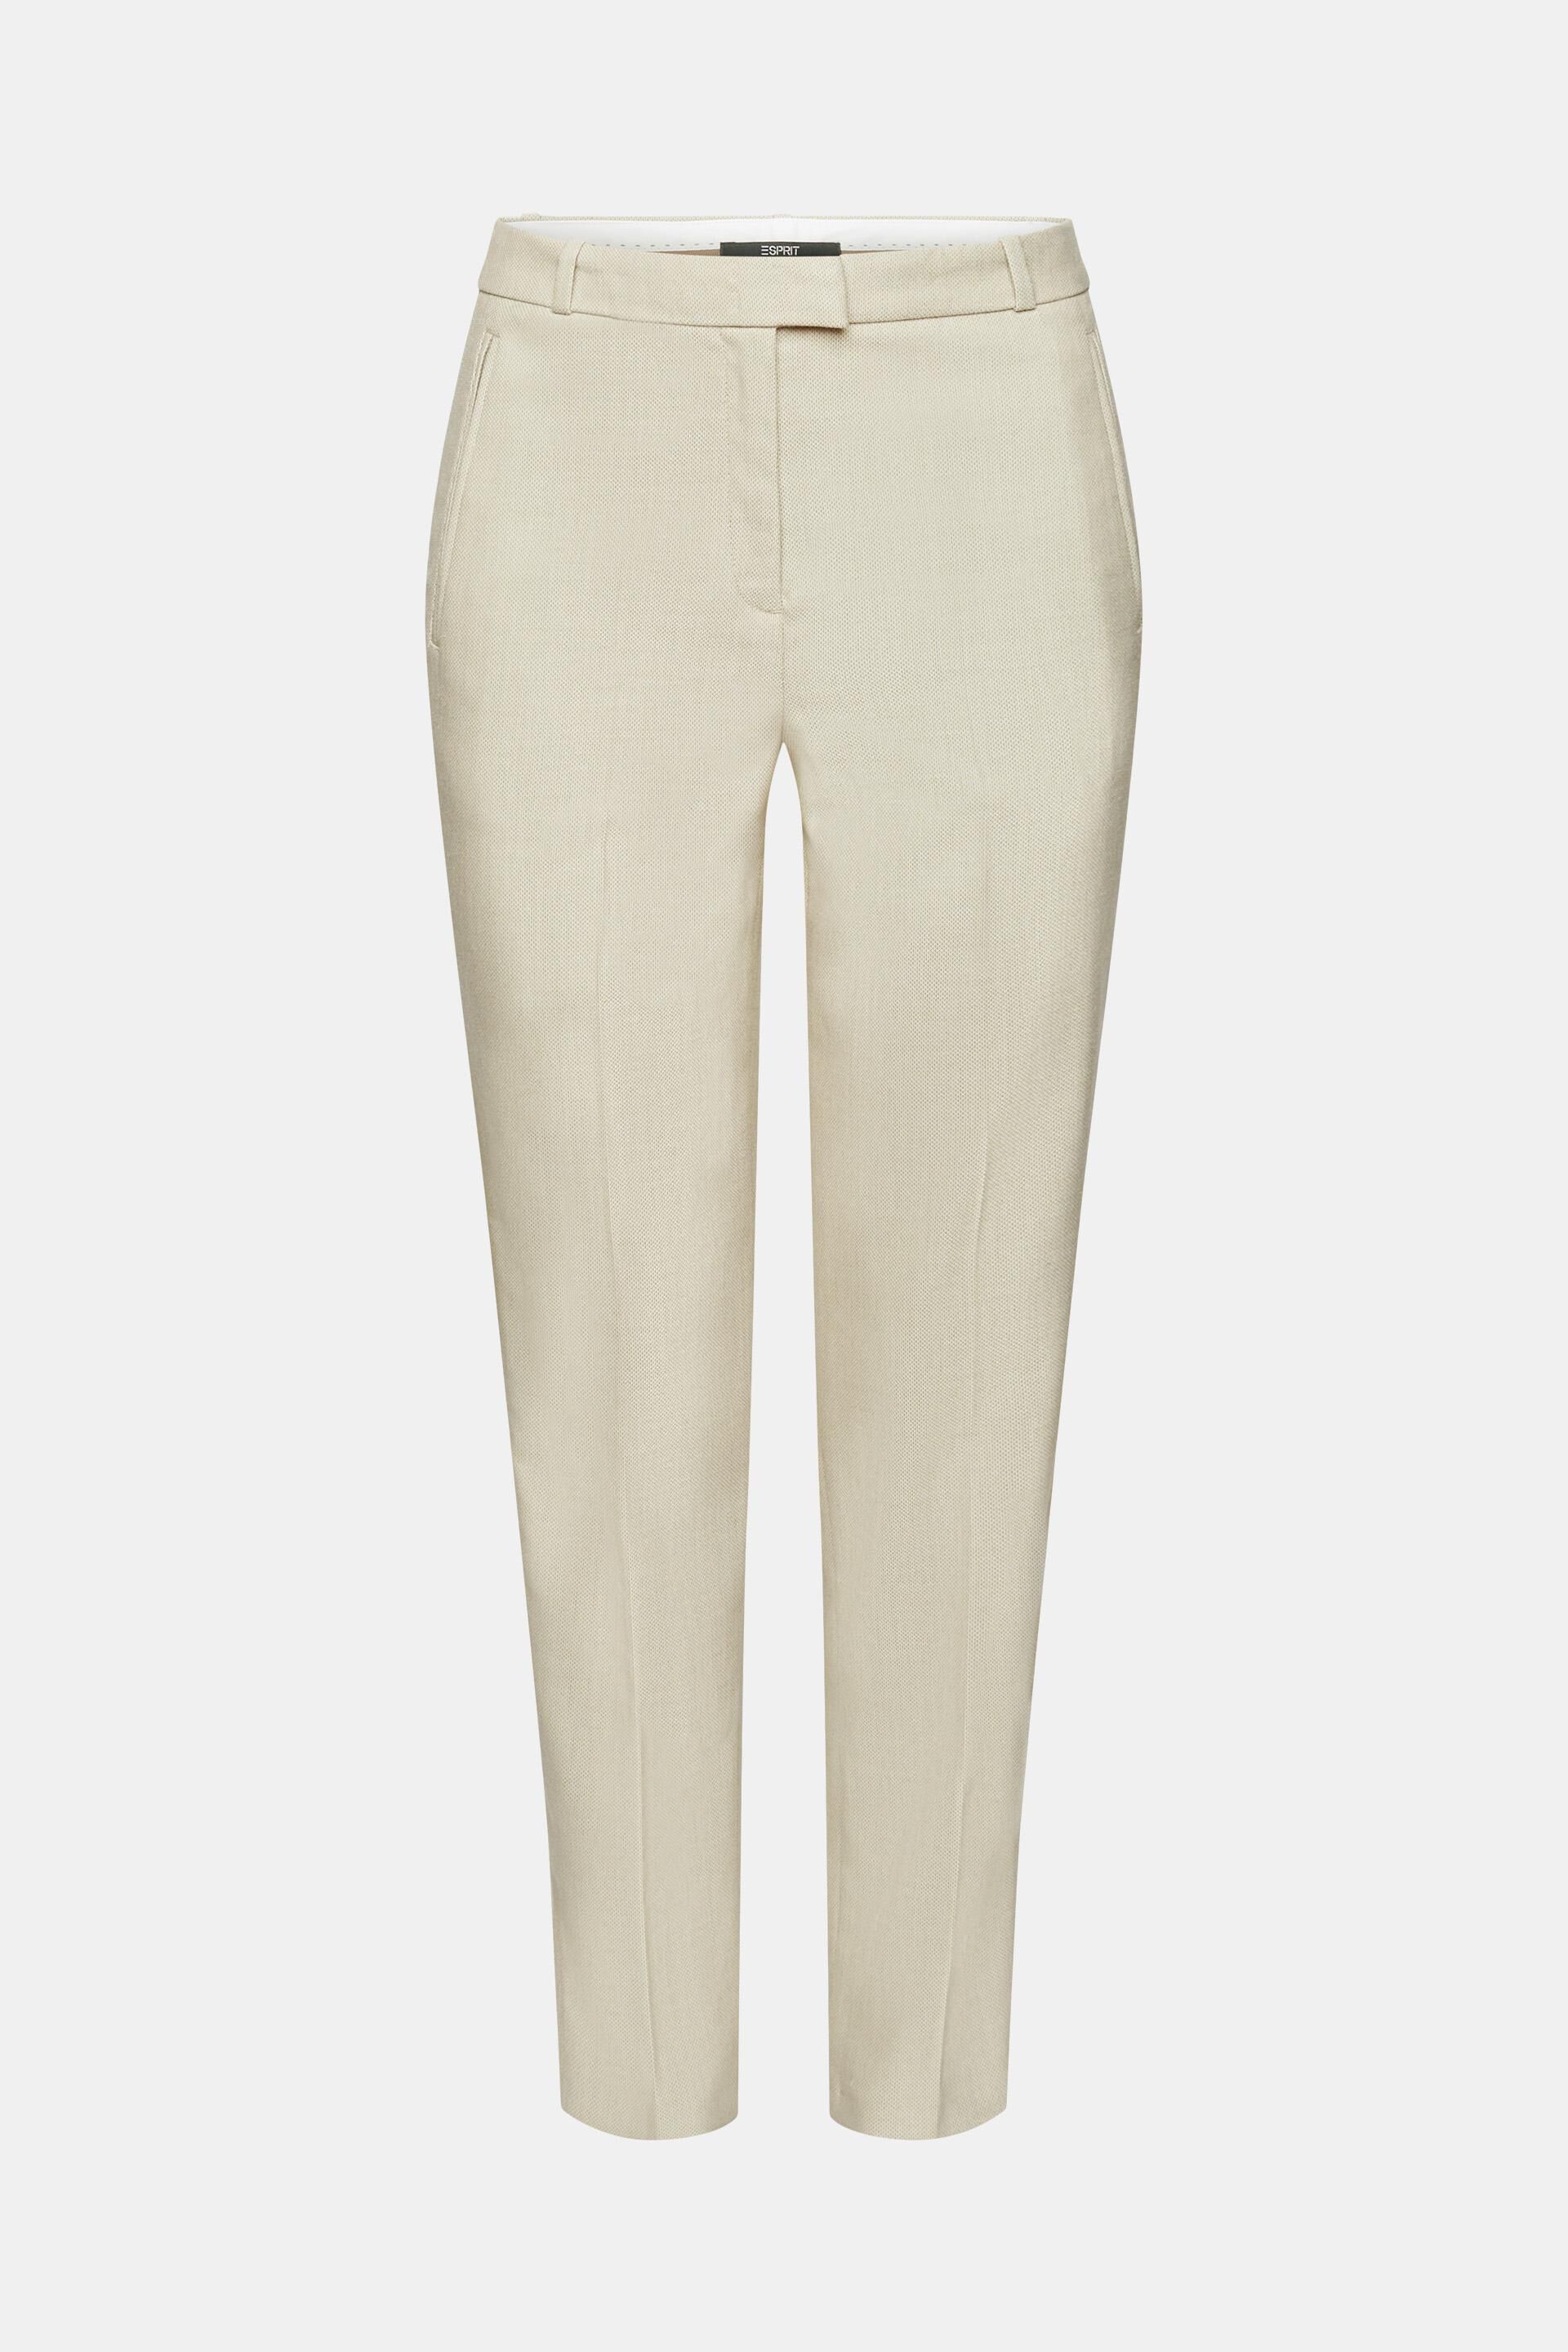 Buy Women Cream Textured Formal Regular Fit Trousers Online - 916017 | Van  Heusen